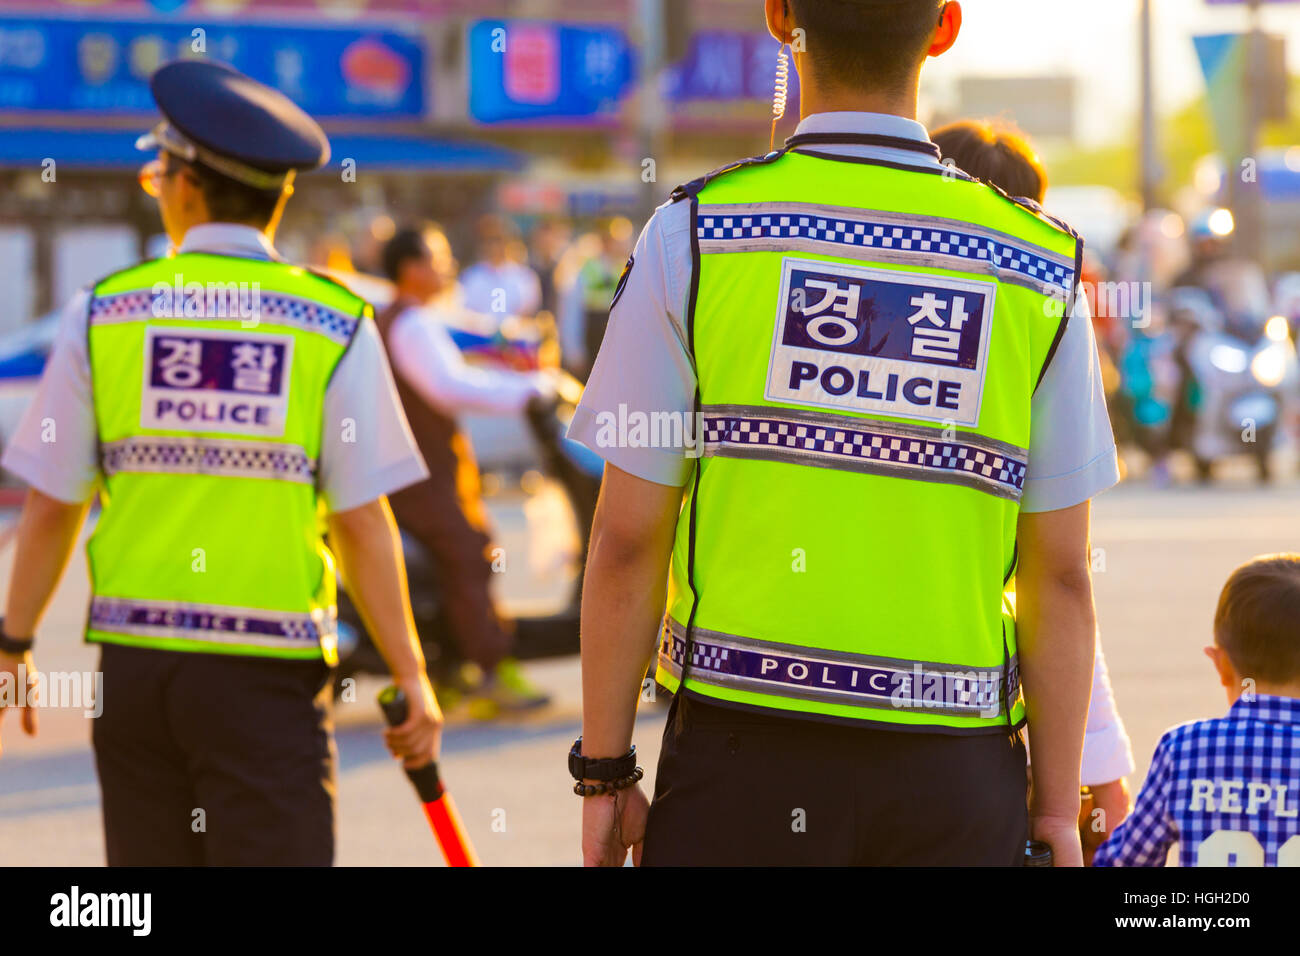 L'arrière de deux policiers en gilet coréen lumineux uniforme, écrit au dos de la police, de contrôle d'une manifestation sur la rue du centre-ville Banque D'Images